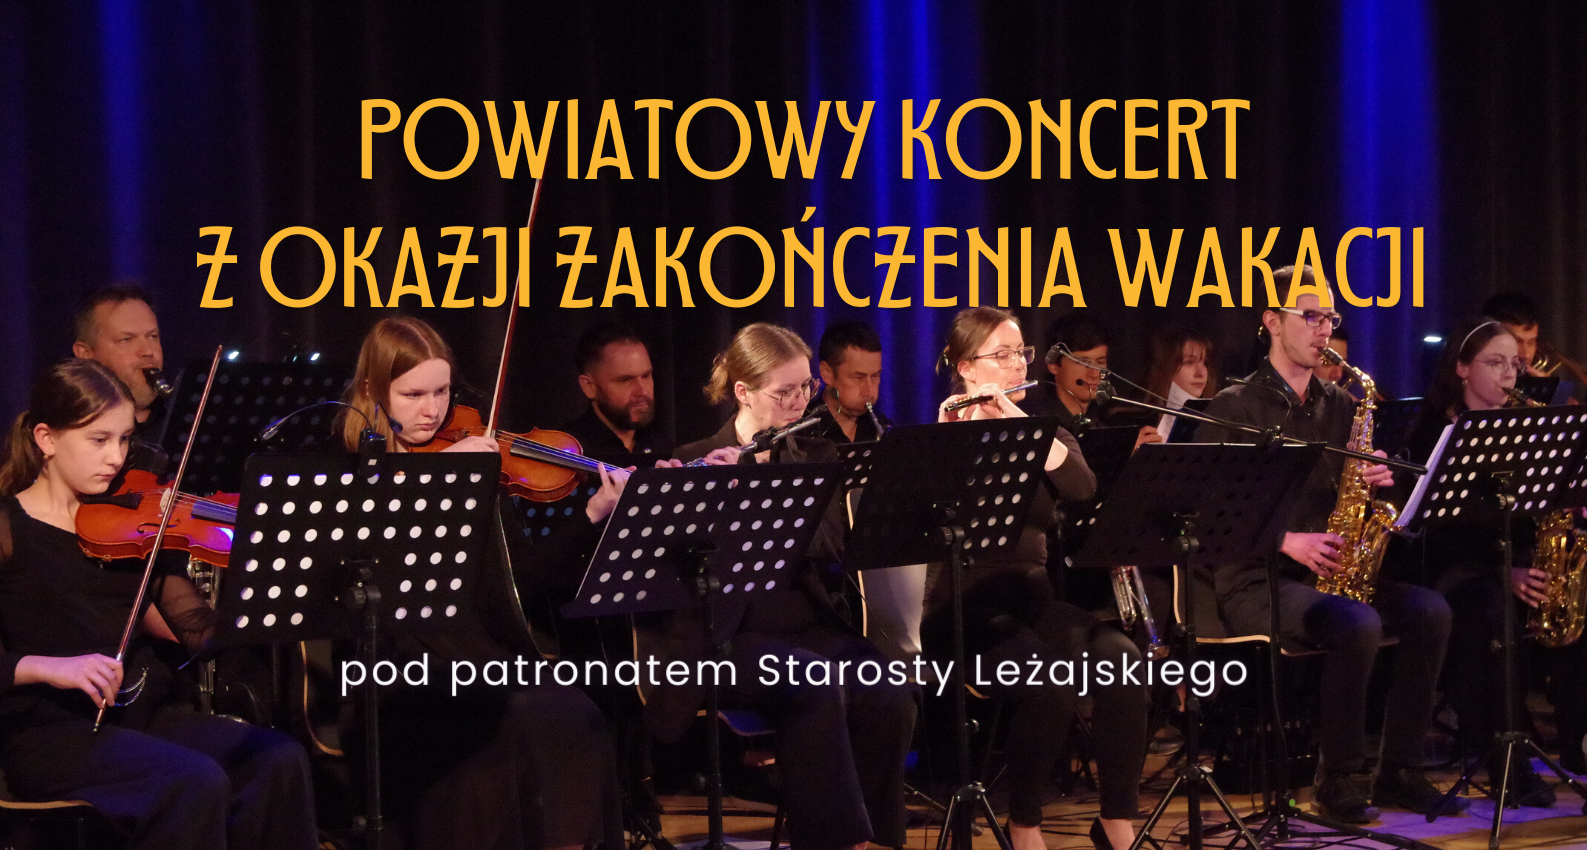 Powiatowy koncert z okazji zakończenia wakacji pod patronatem Starosty Leżajskiego